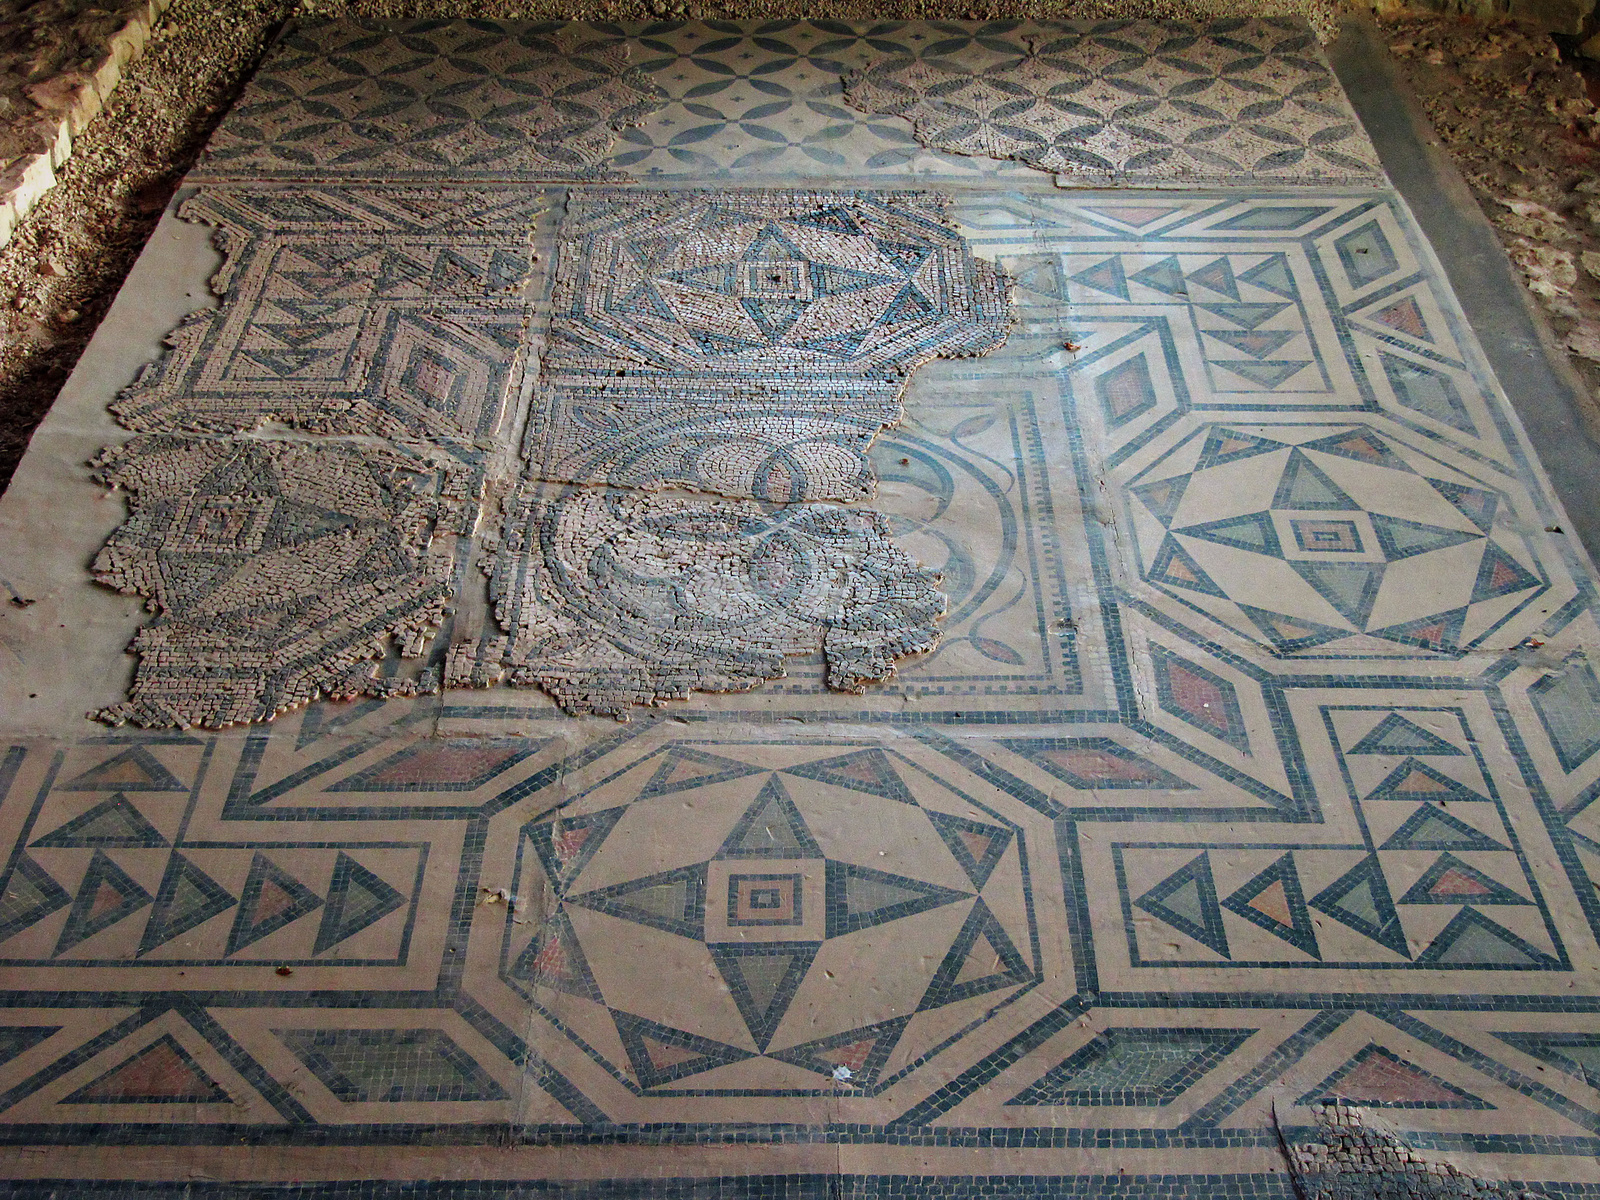 Balácapuszta-római-villa-mozaik